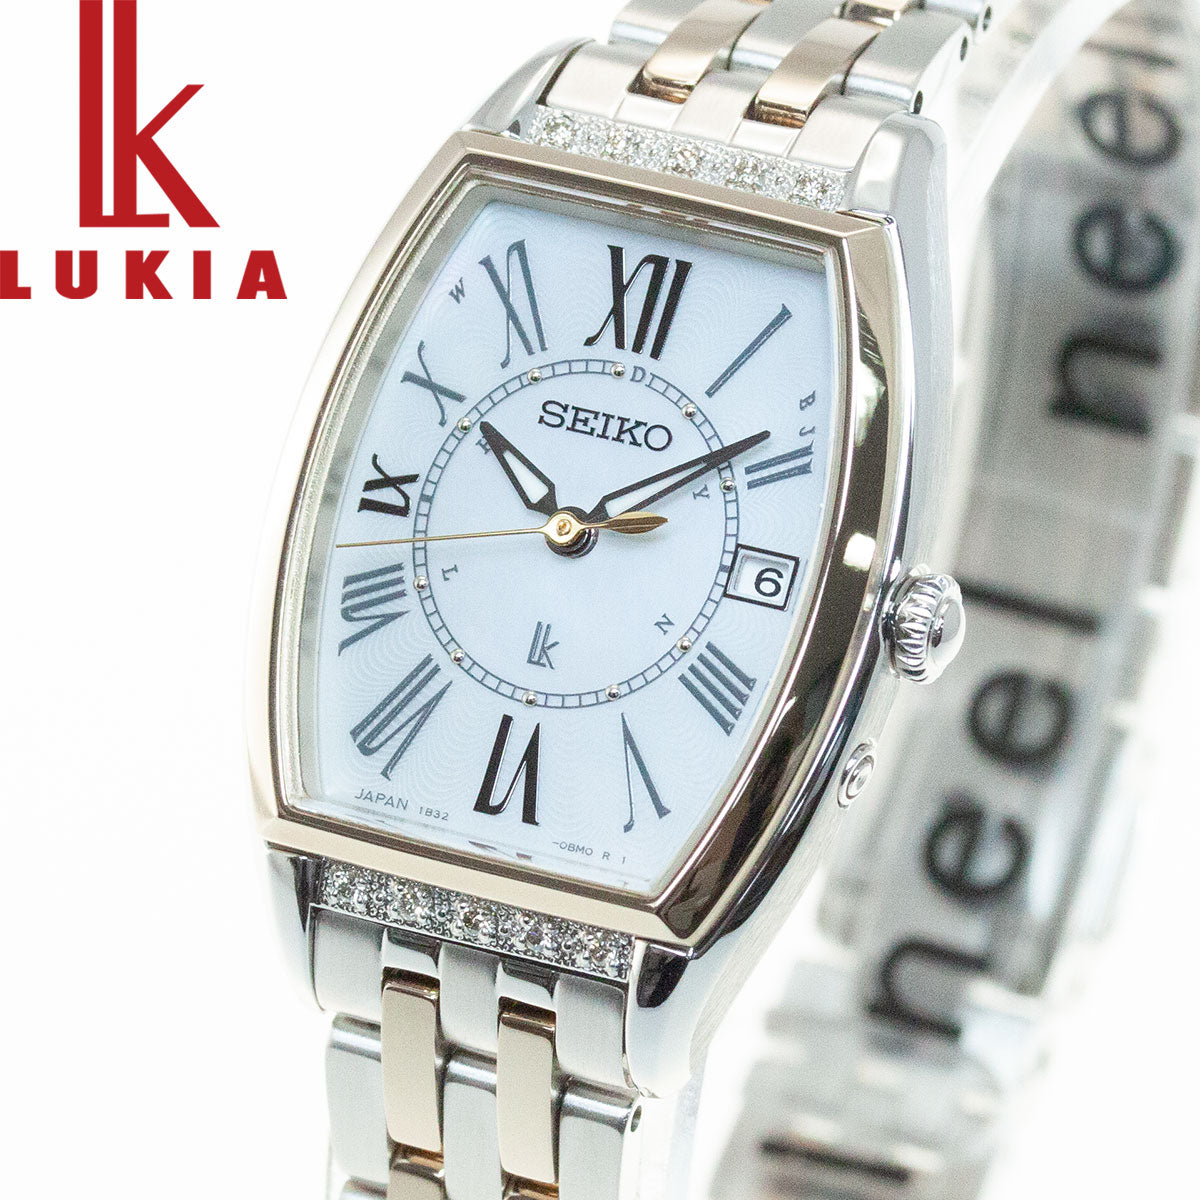 セイコー ルキア SEIKO LUKIA 電波 ソーラー 腕時計 レディース Lady Diamond SSVW180